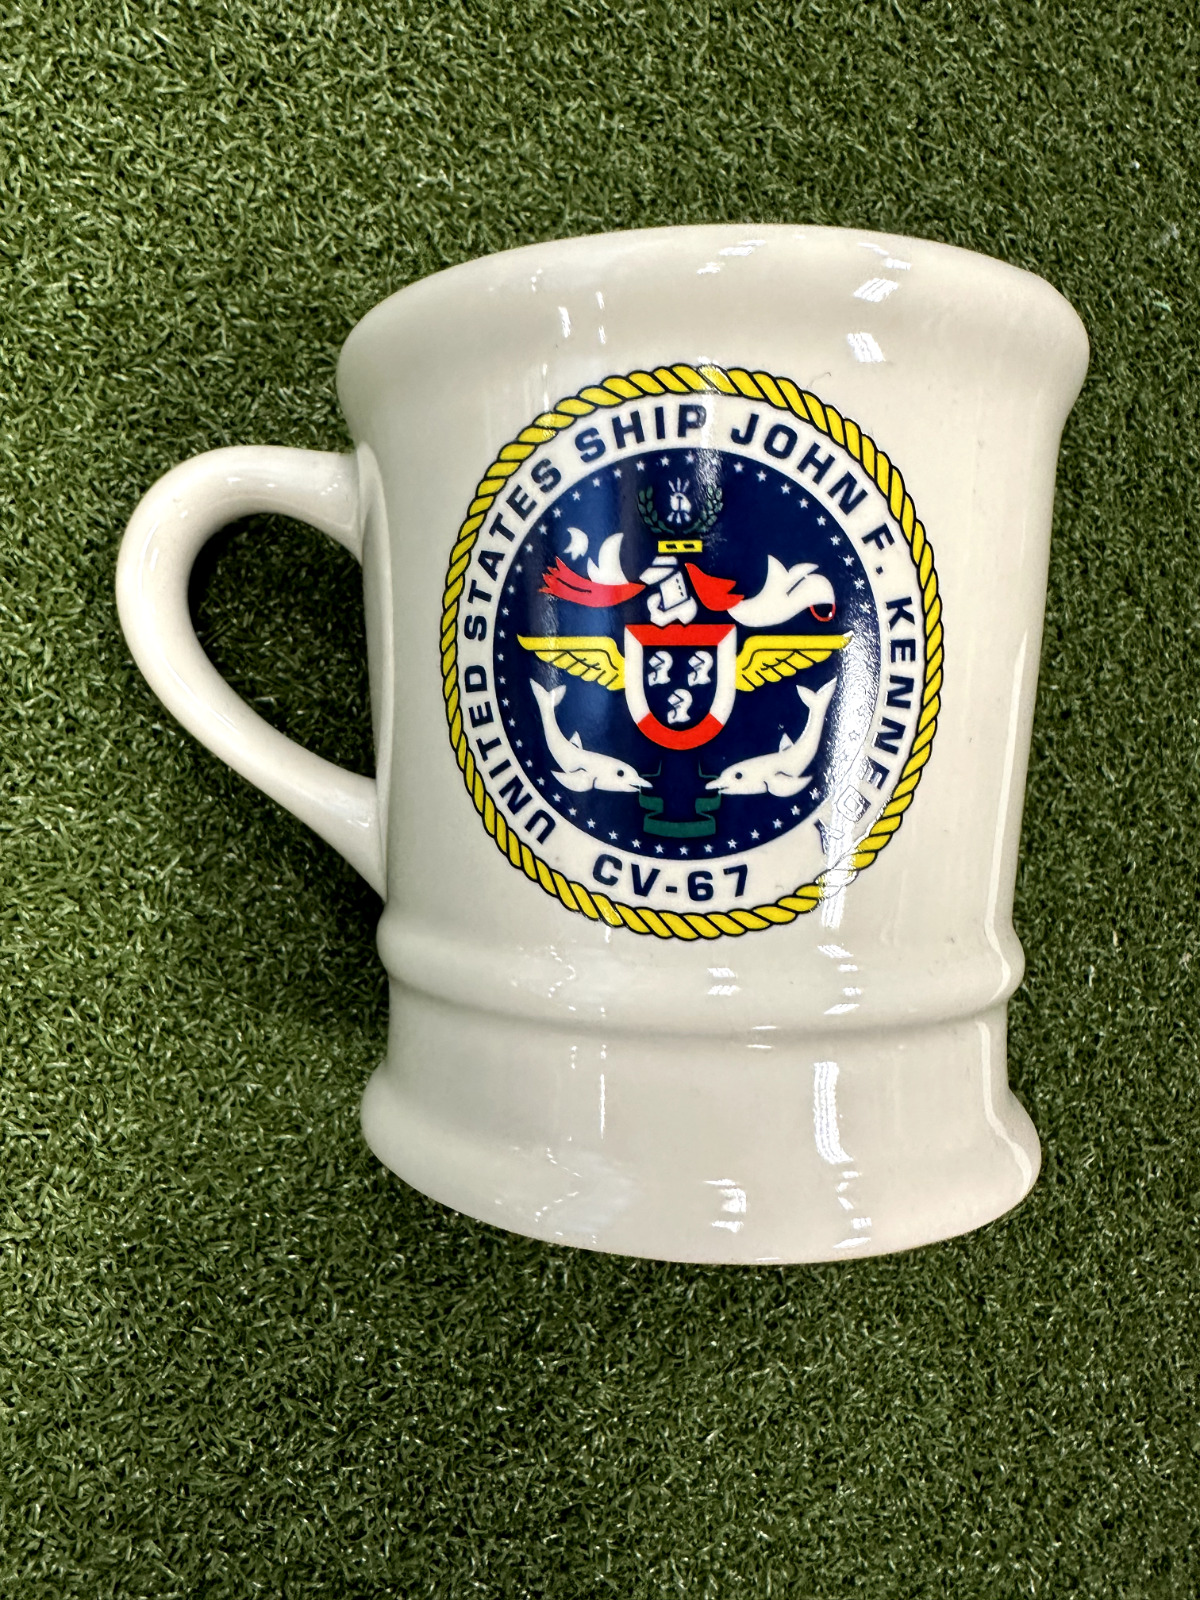 United States John F. Kennedy Naval CV-67 Mug Rare